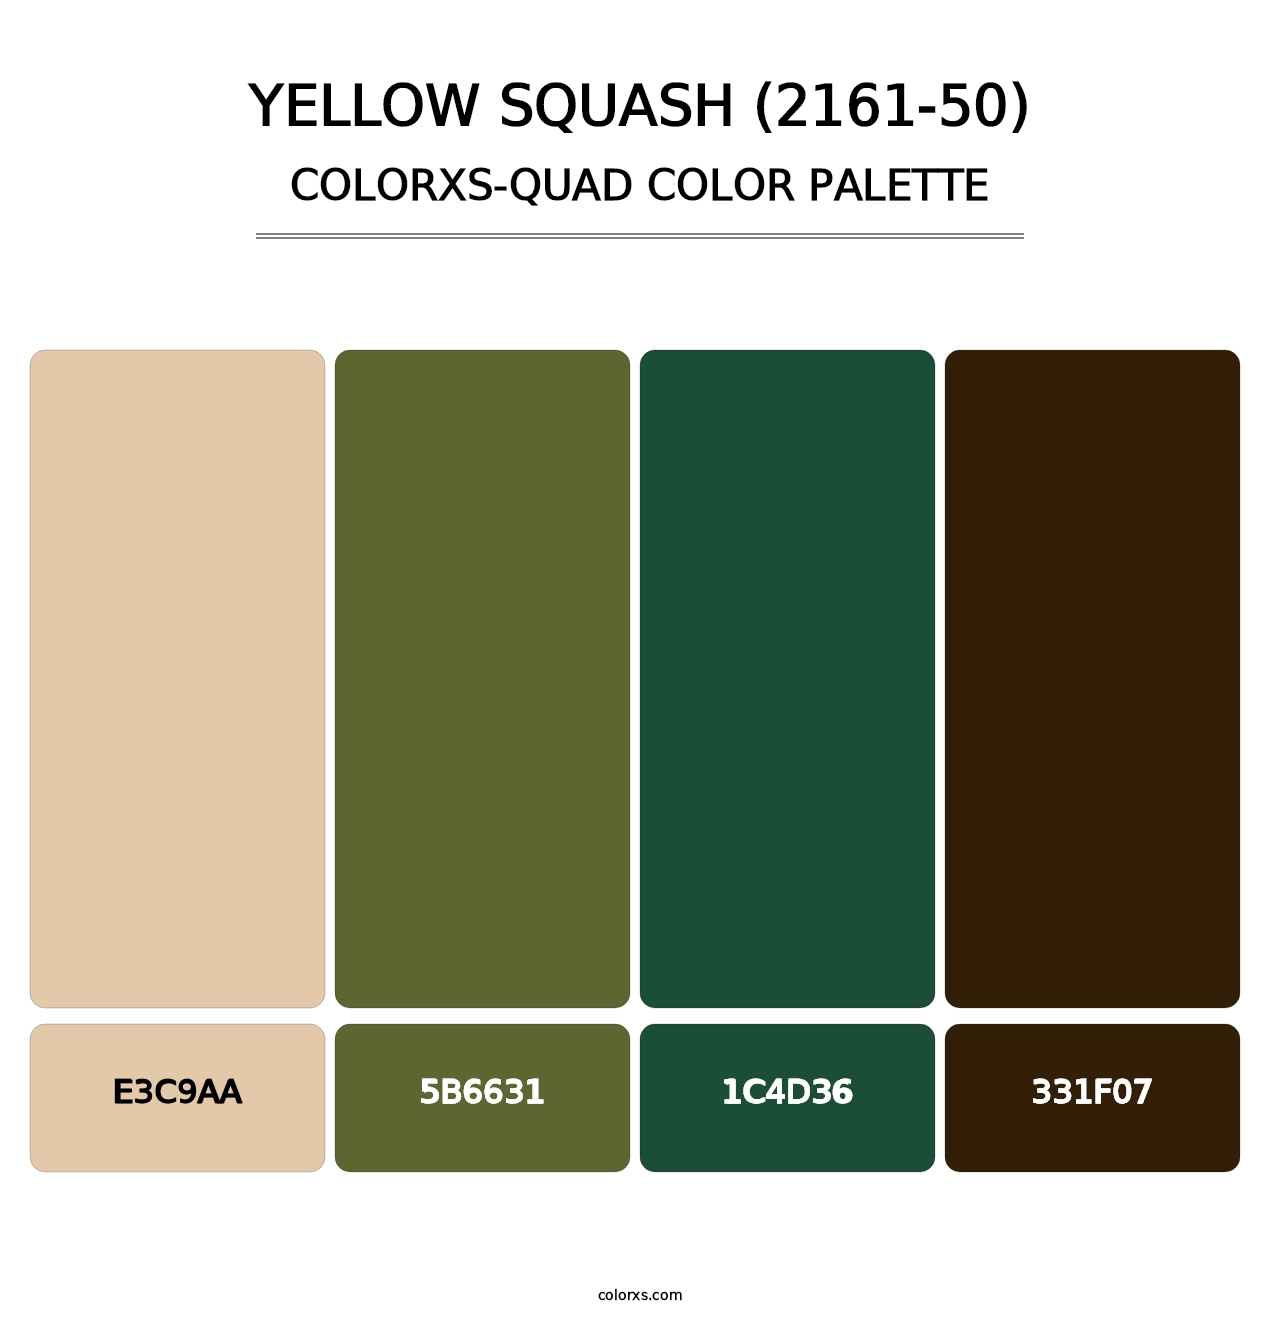 Yellow Squash (2161-50) - Colorxs Quad Palette